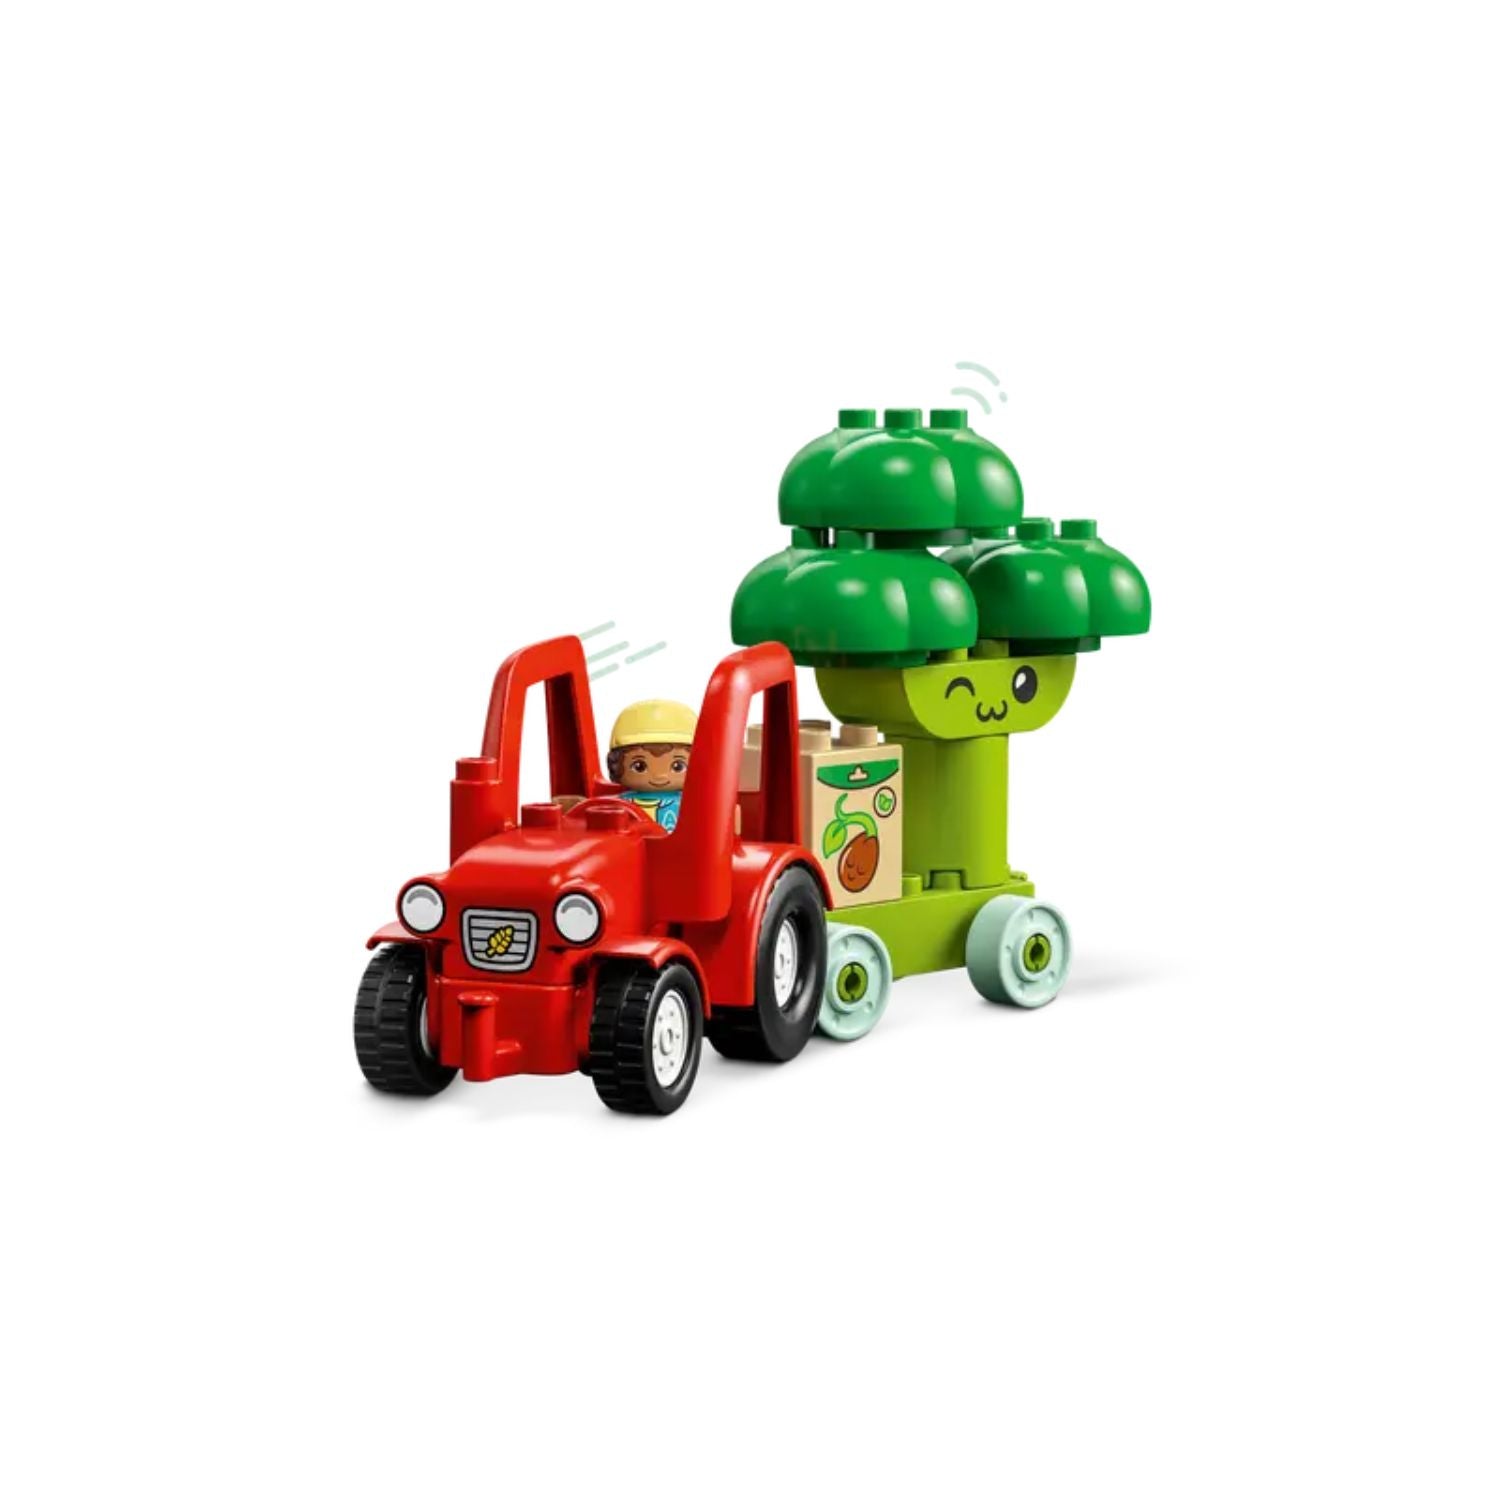 Lego duplo my first 10982 il trattore di frutta e verdura, gioco impilabile  per bambini da 1,5 a 3 anni, giochi educativi - Toys Center